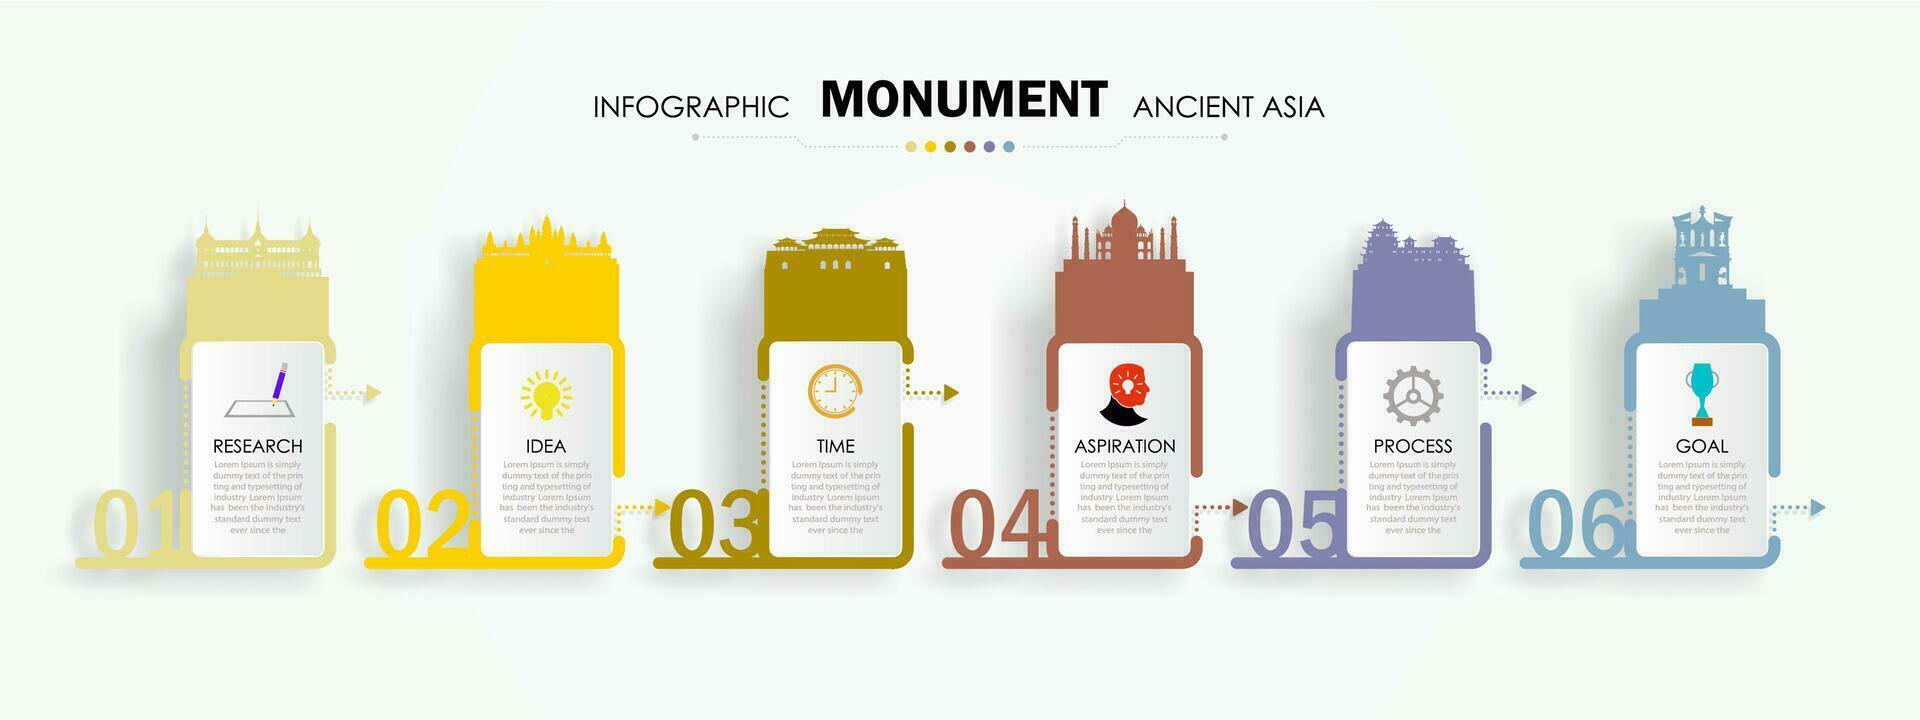 viagem ponto de referência infográfico Ásia antigo monumento modelo. vetor